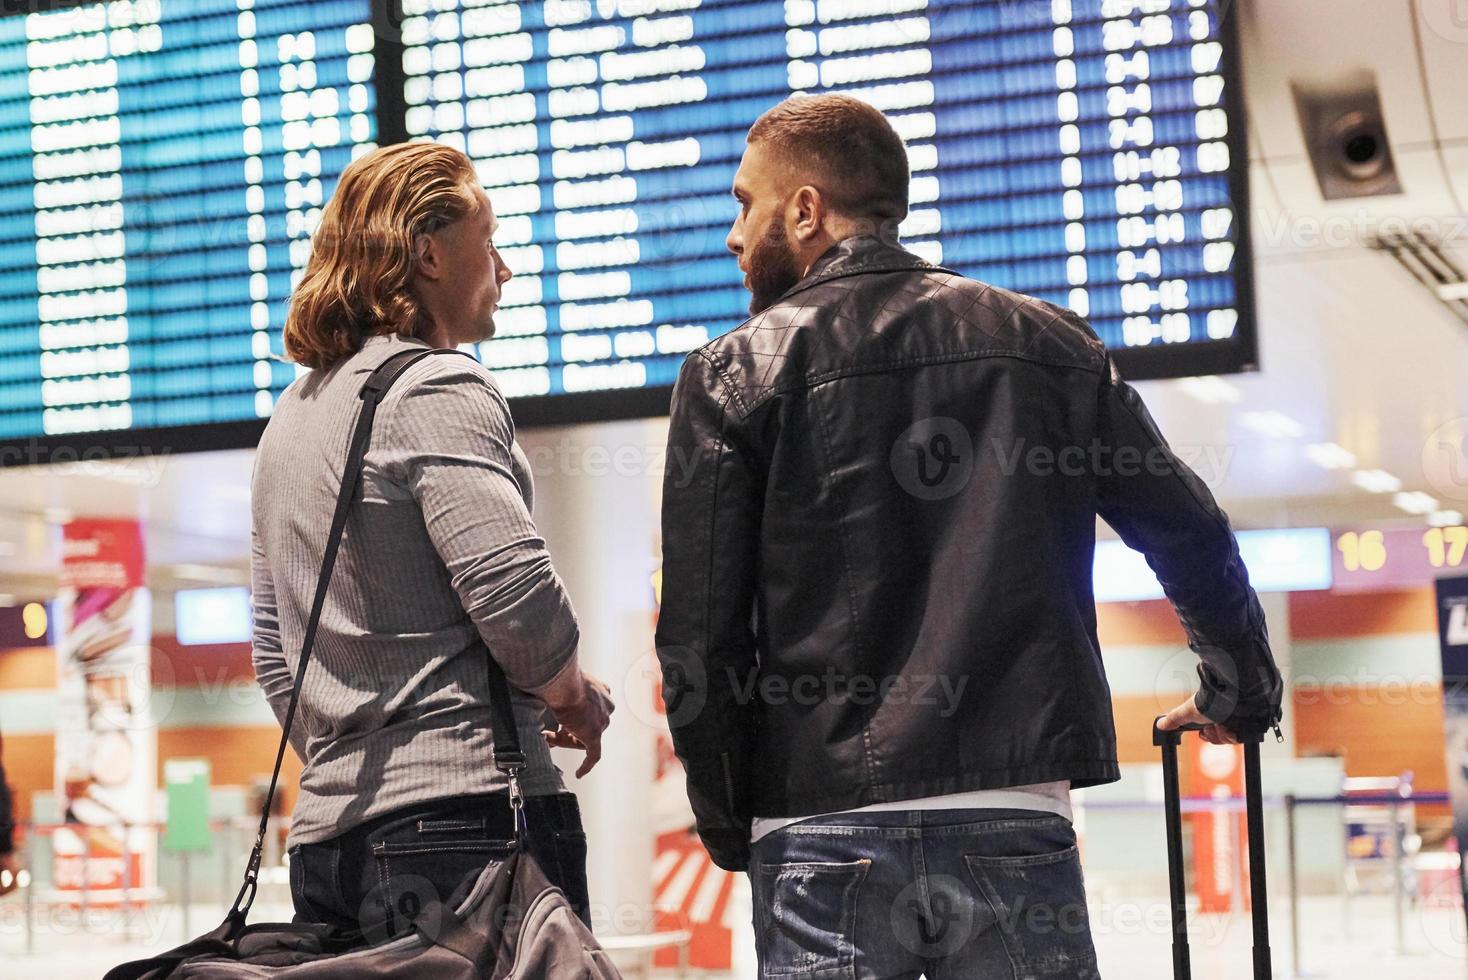 Foto von zwei Kameraden, die sich auf einem Flughafen in der Nähe des Fluginformationsanzeigesystems befinden